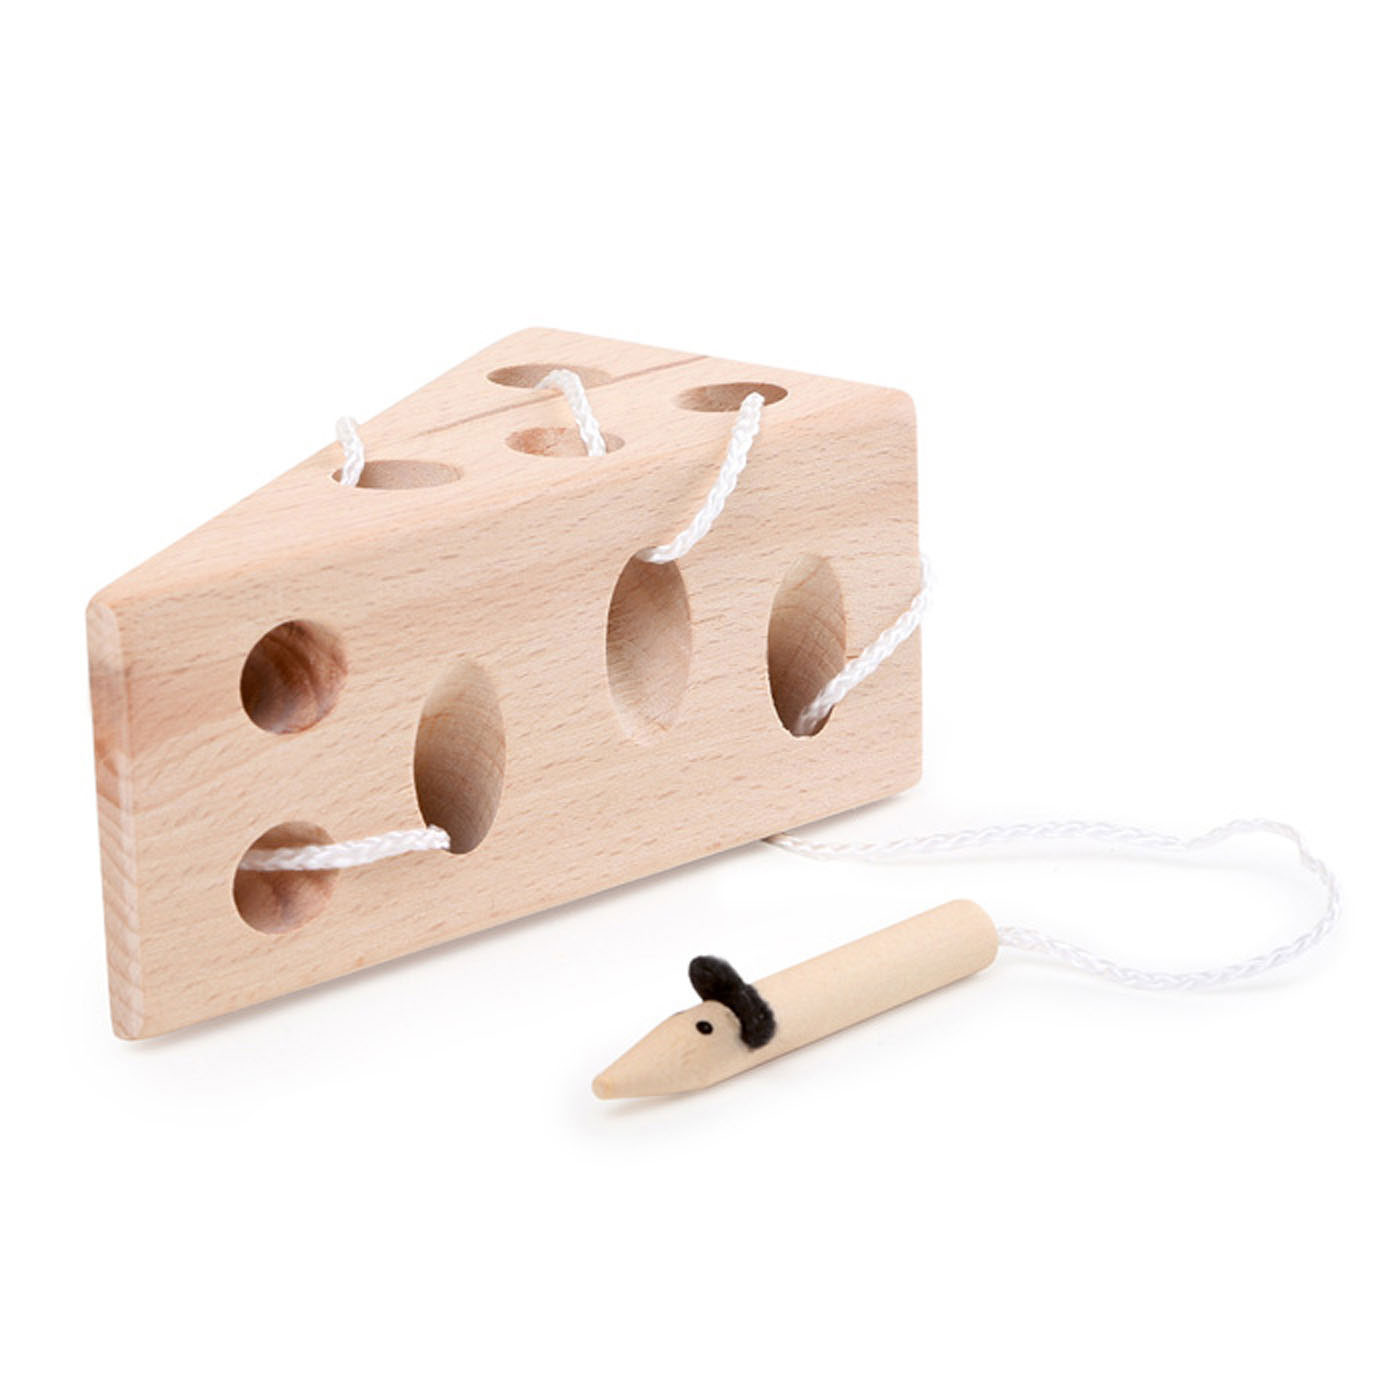 Small Foot - Fädelspiel aus Holz mit Käse und Maus